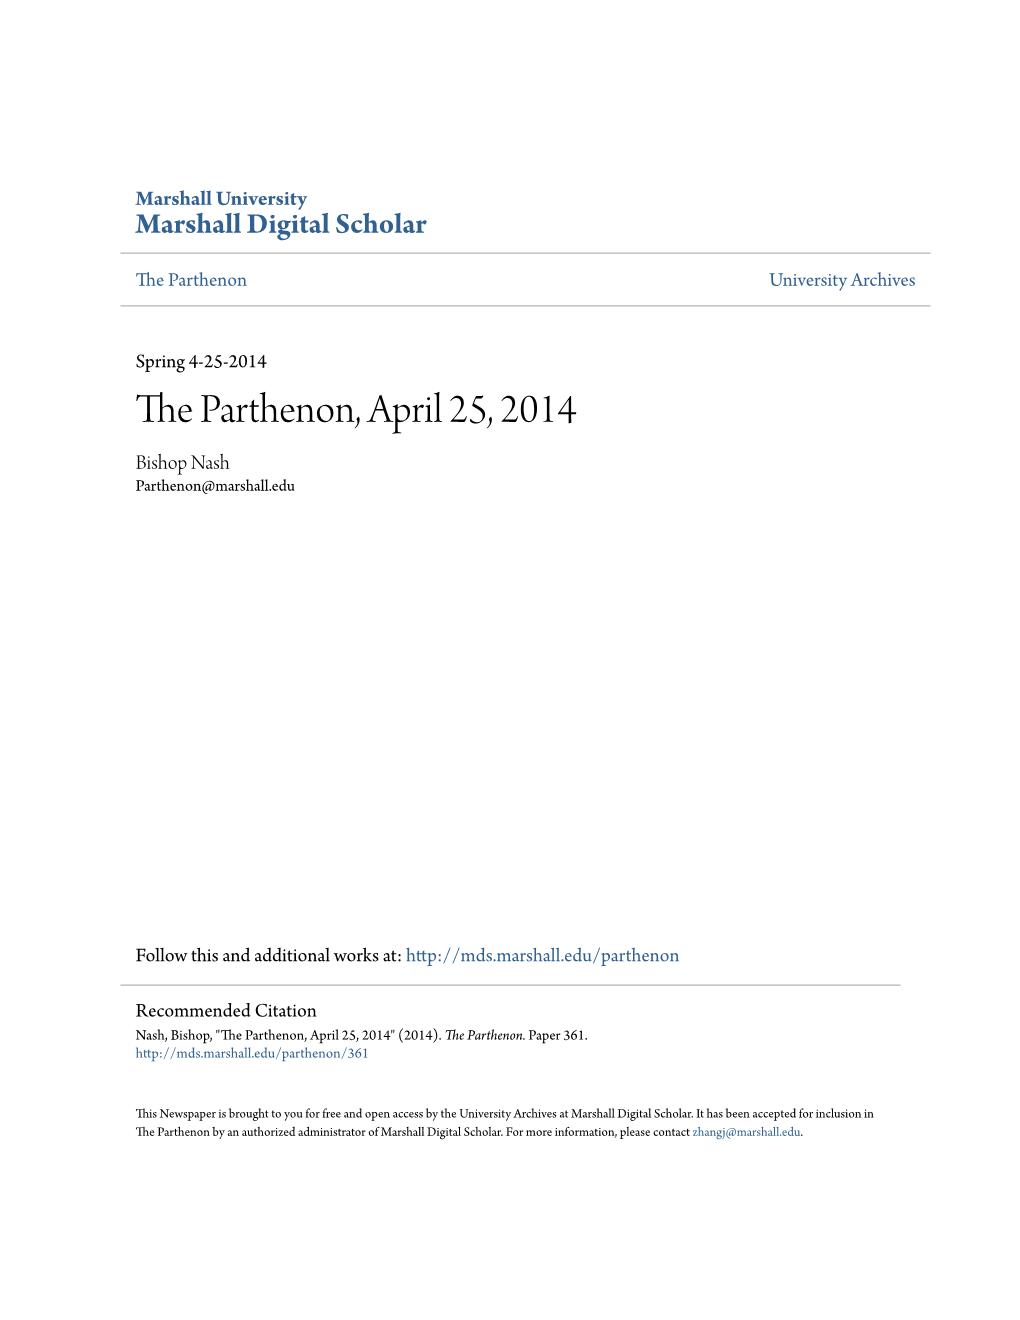 The Parthenon, April 25, 2014